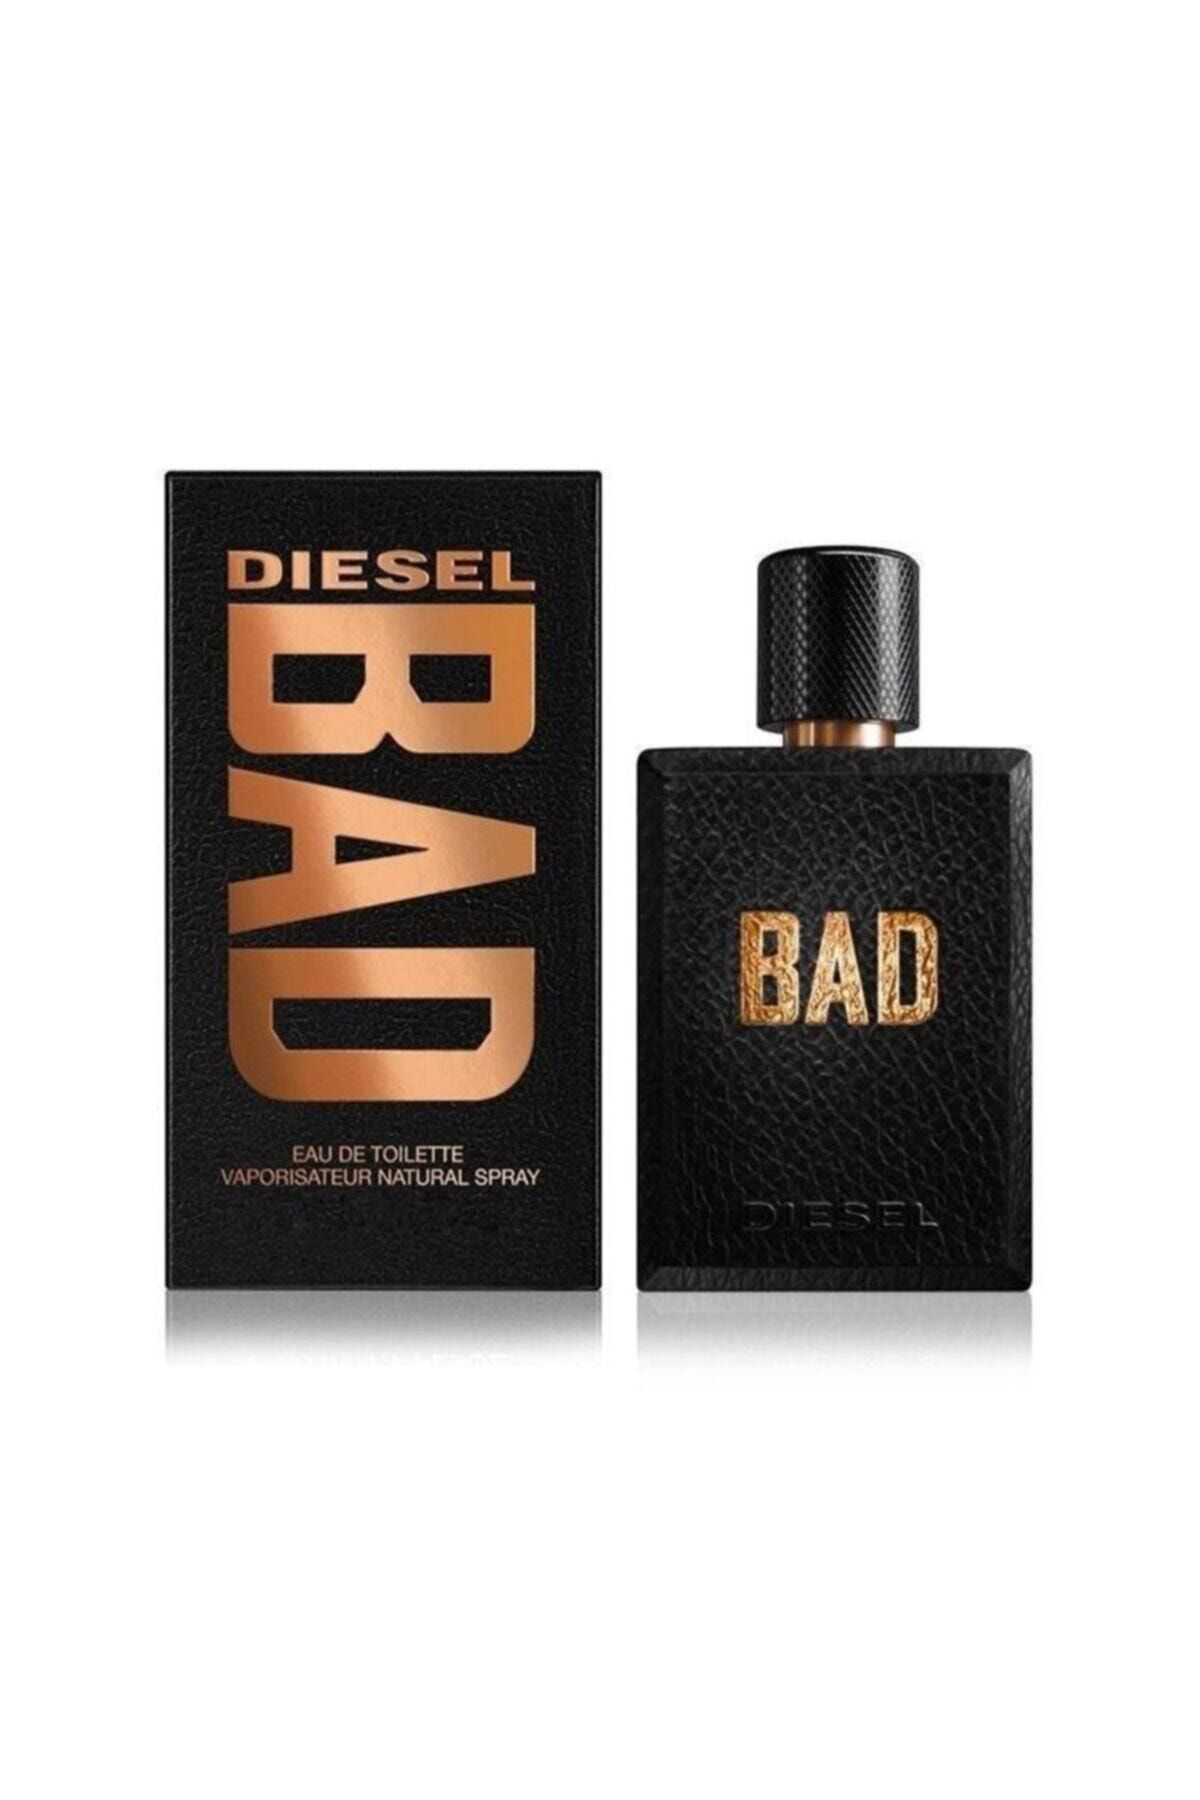 Diesel Bad Edt 125 ml Erkek Parfüm 3605522052949